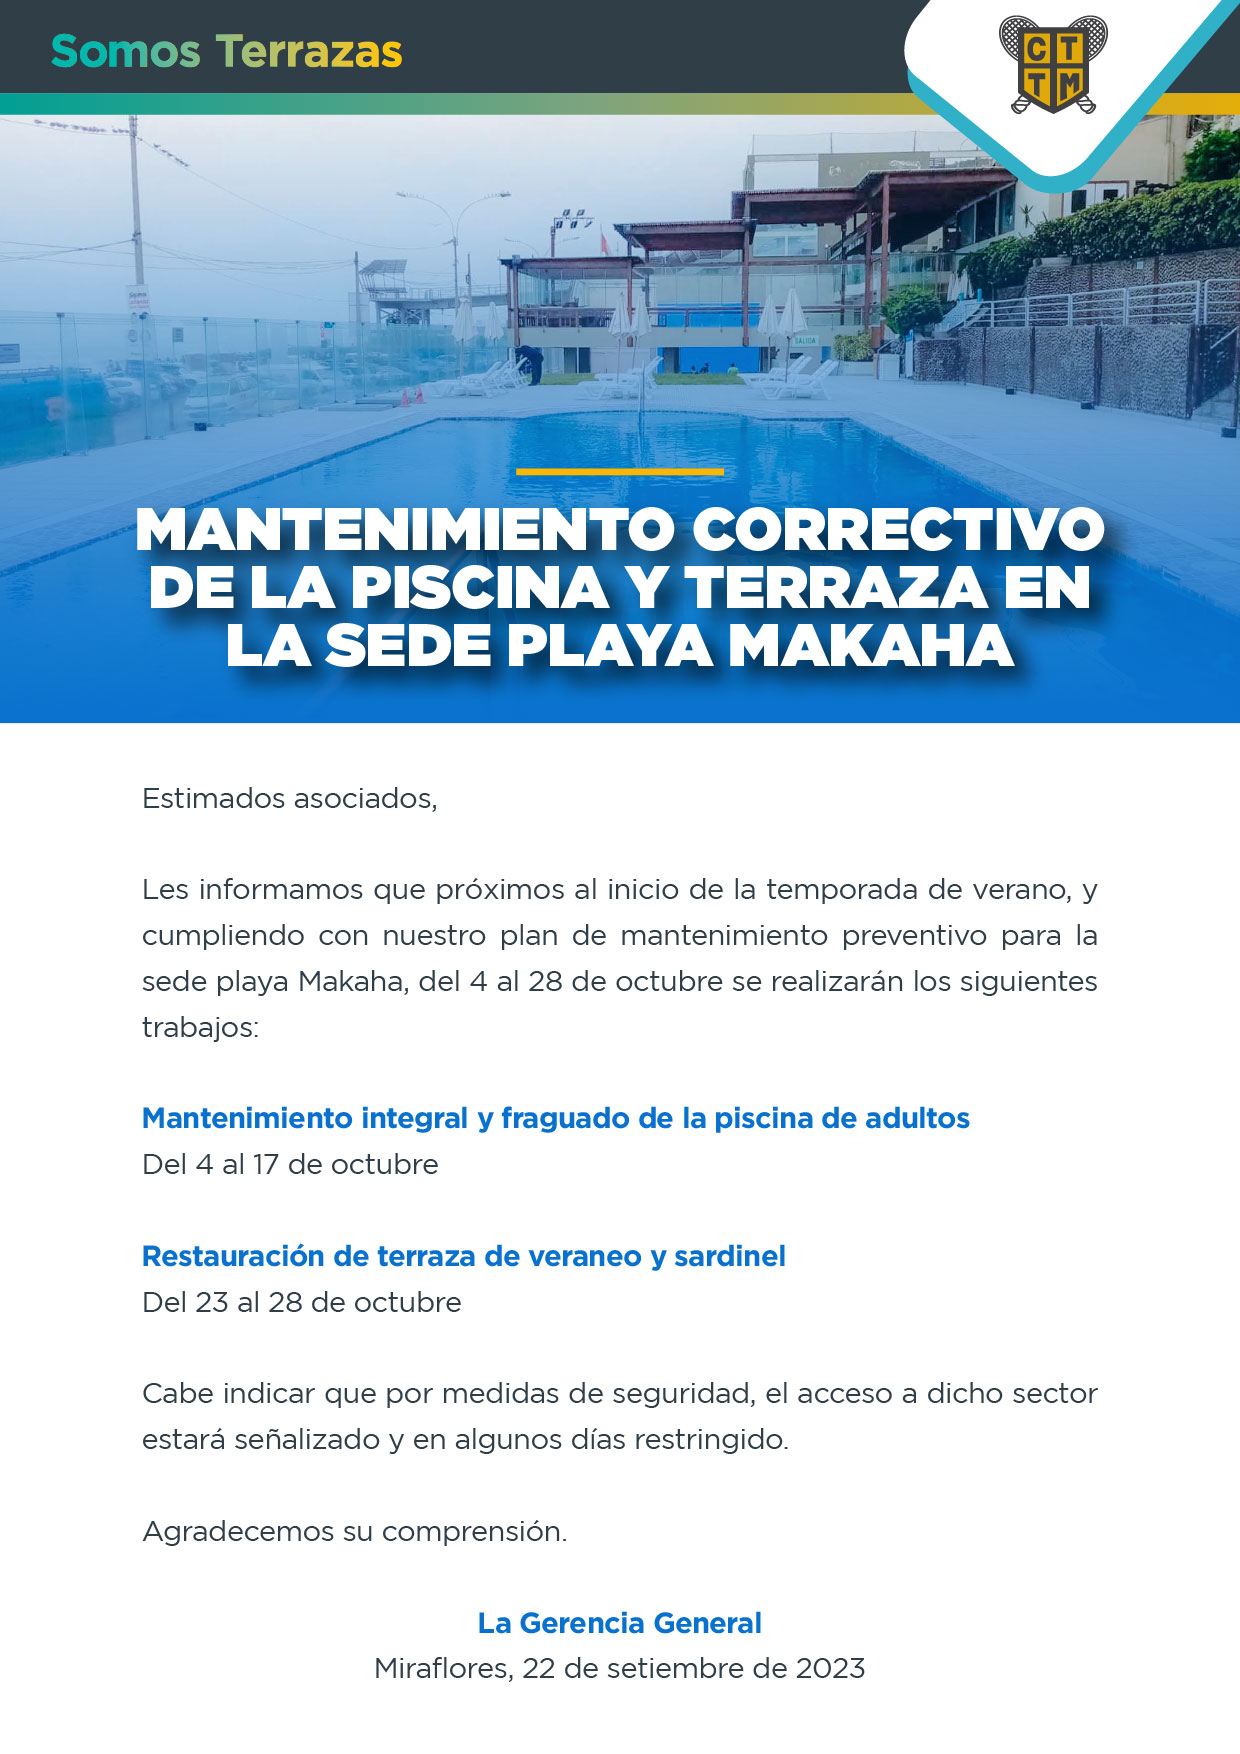 MANTENIMIENTO CORRECTIVO DE LA PISCINA Y TERRAZA EN LA SEDE PLAYA MAKAHA